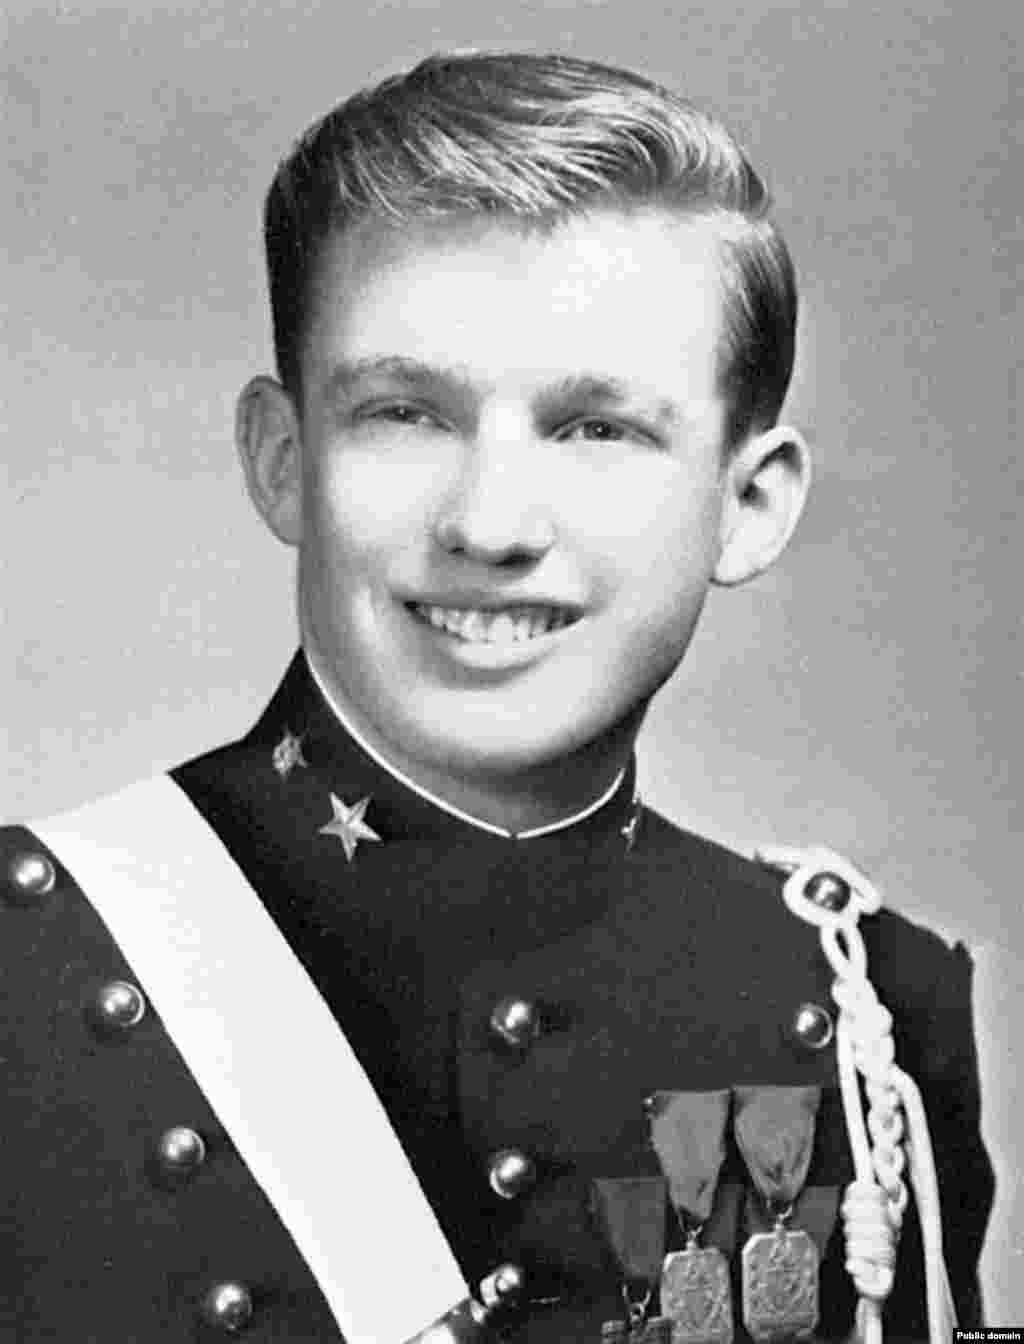 Picha ya Donald Trump akiwa kijana katika chuo cha kijeshi cha&nbsp; at the New York Military Academy mwaka 1964. (Public domain)